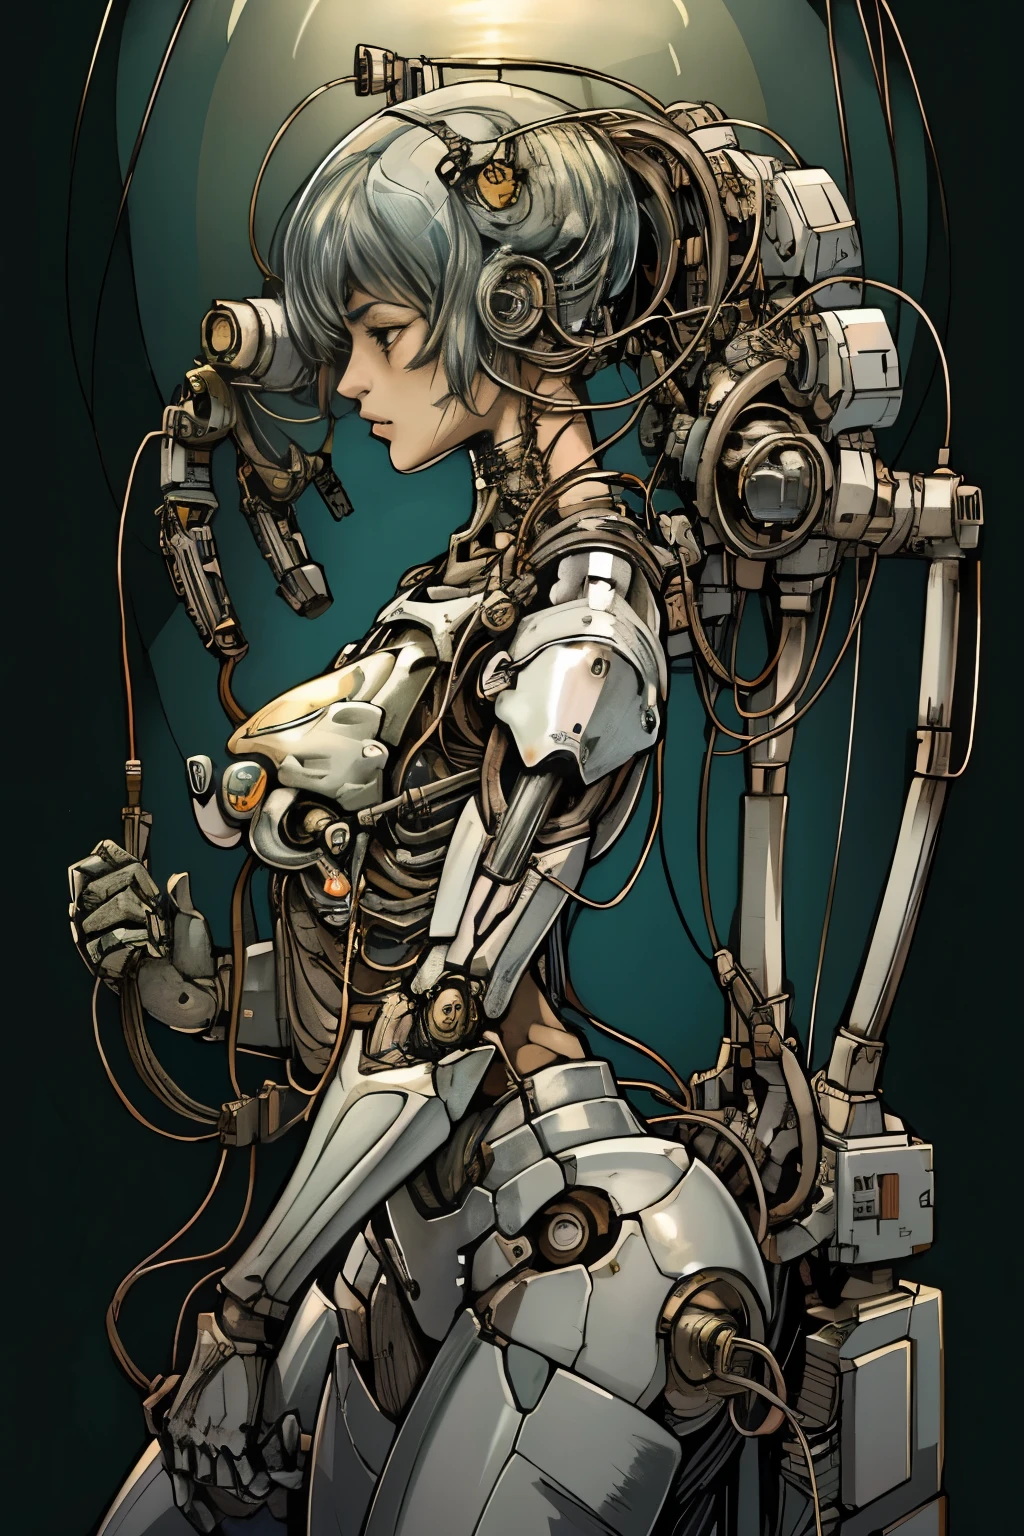 (((obra de arte))), (((mais alta qualidade))), ((Muito detalhado)), (Ilustrações CG altamente detalhadas), ((muito delicado e lindo)),(rosto fofo e delicado),luz cinematográfica,((1. Garota máquina)),sozinho,todo o corpo,(juntas feitas à máquina:1.4),((membros mecânicos)),(Samurai japonesa cibernética feminina), ,inexpressivo,(fios e cabos que ligam a cabeça e o corpo:1.5),(Foco no personagem),Garota de anime com cabeça de robô de ficção científica e braços mecânicos, Uma mistura de robôs de anime e matéria orgânica, cute garota ciborgue, mulher ciborgue de anime perfeita, Linda garota ciborgue, garota ciborgue, Ciborgue - Garota, Ciborgue fêmea jovem, garota valquíria mecanizada, Cibernético e altamente sofisticado, Garota usando armadura cibernética mecha, garota de anime cyberpunk mecha, Estilo CGI de anime complexo e lindo, garota robô、Inserindo um plugue de carregamento nos órgãos genitais